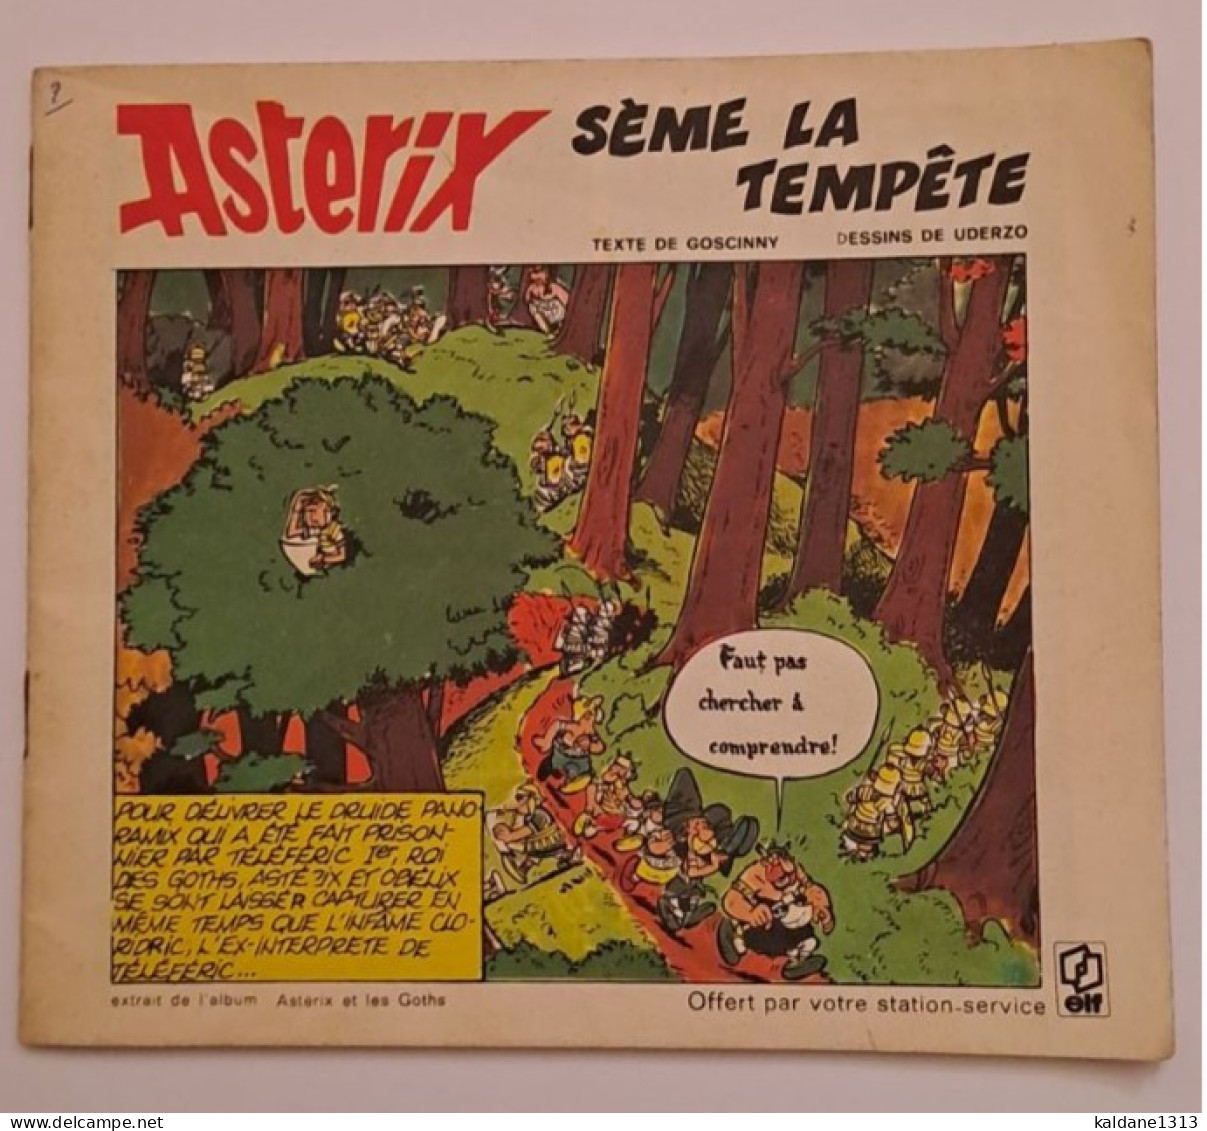 Astérix Lsème La Tempête Mini Album Offert Les Stations Essence Elf 1973 - Astérix